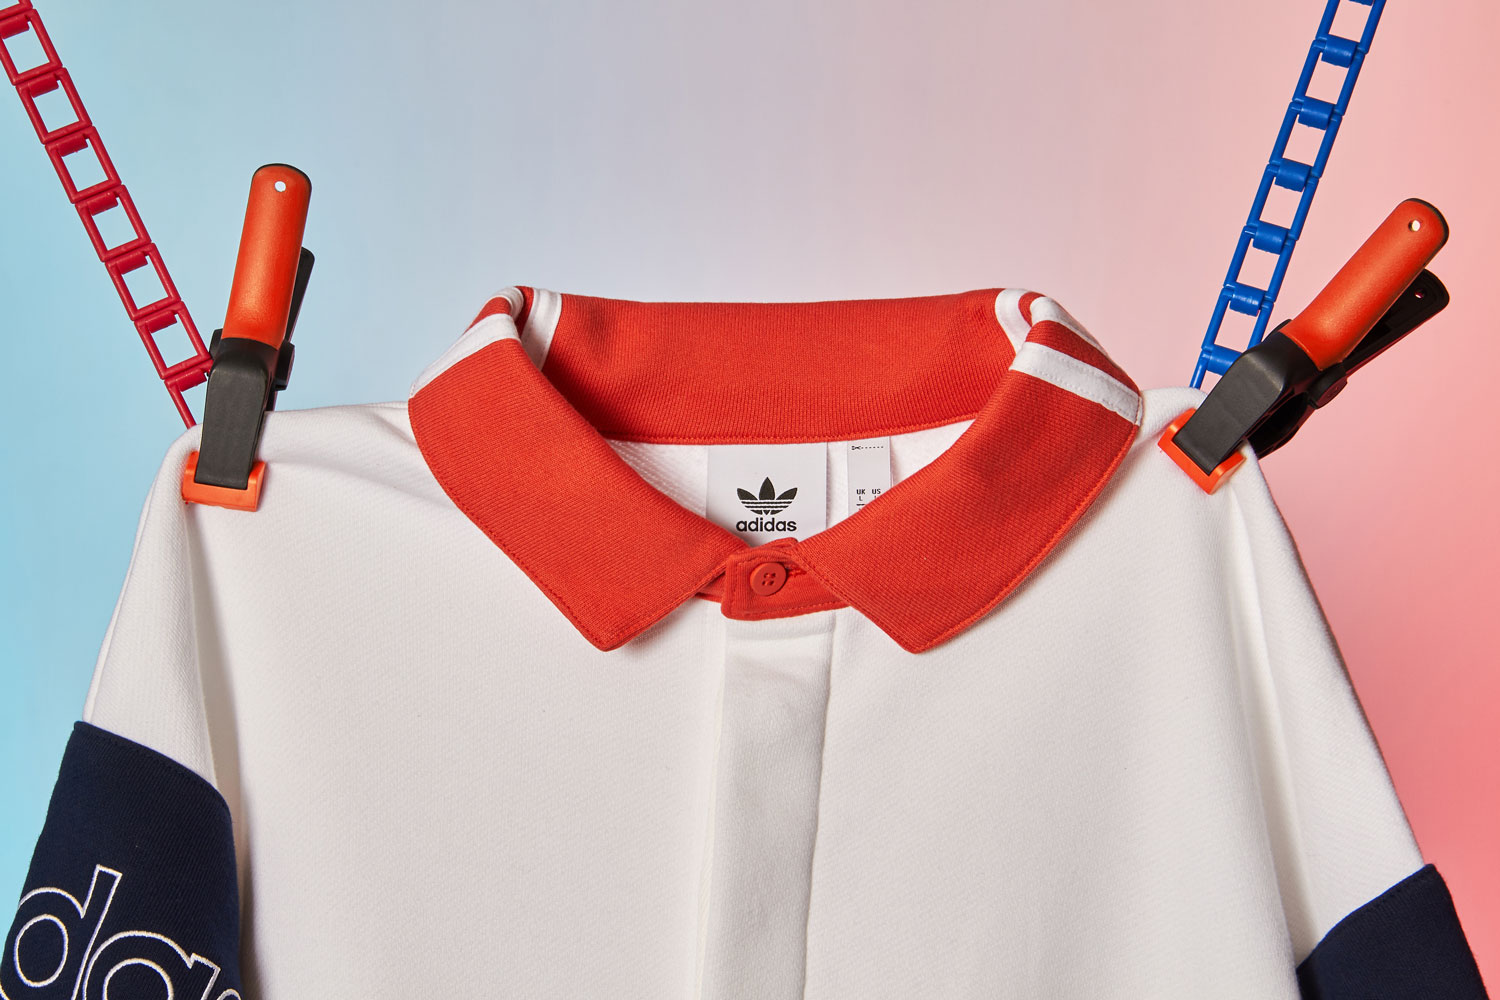 adidas Originals Rugby Sweat Orange/Navy/White